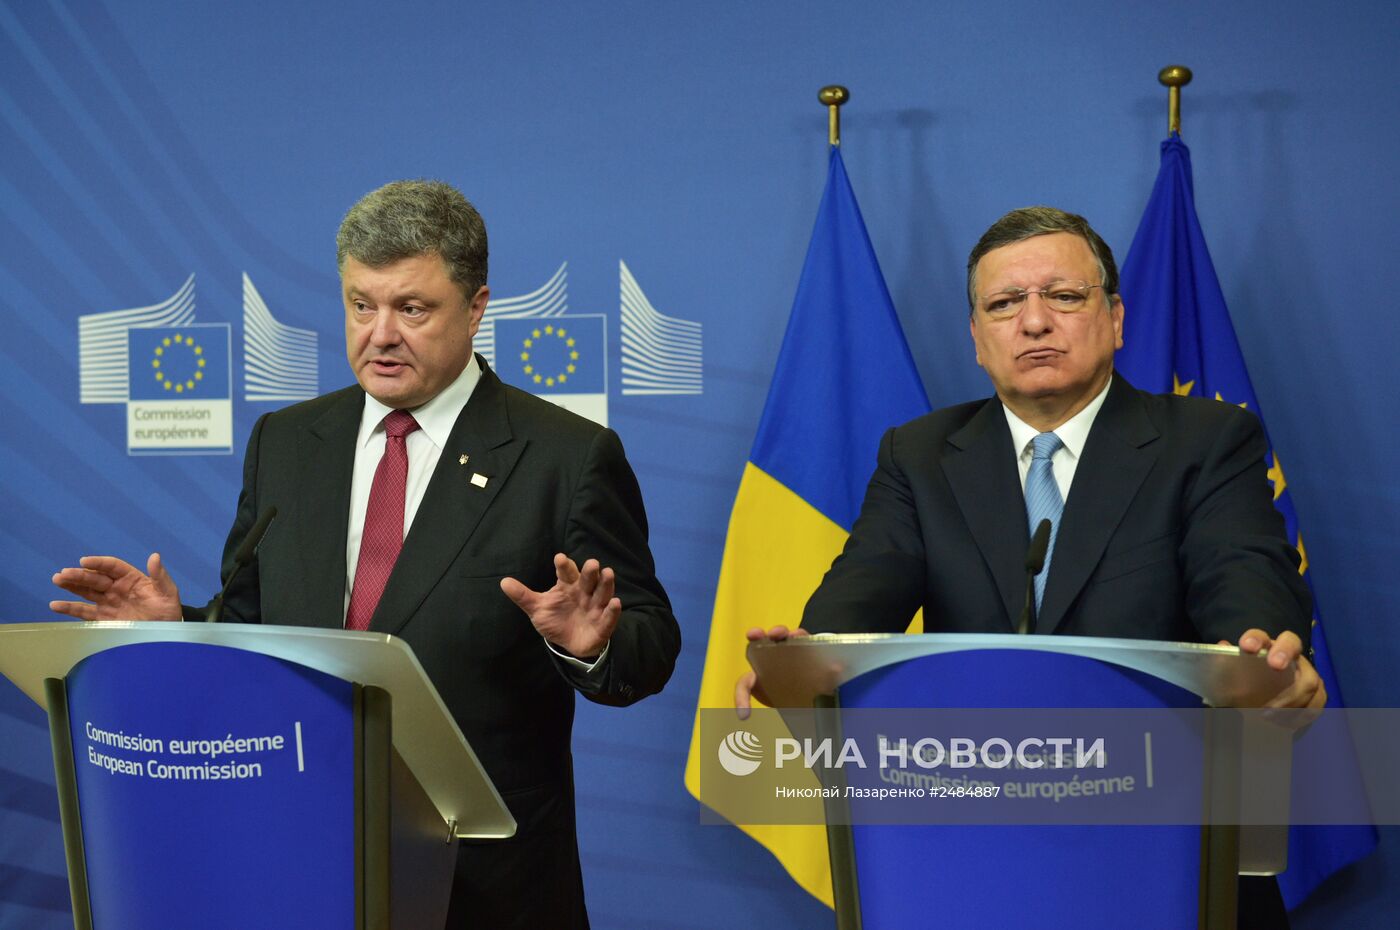 Визит президента Украины Петра Порошенко в Брюссель